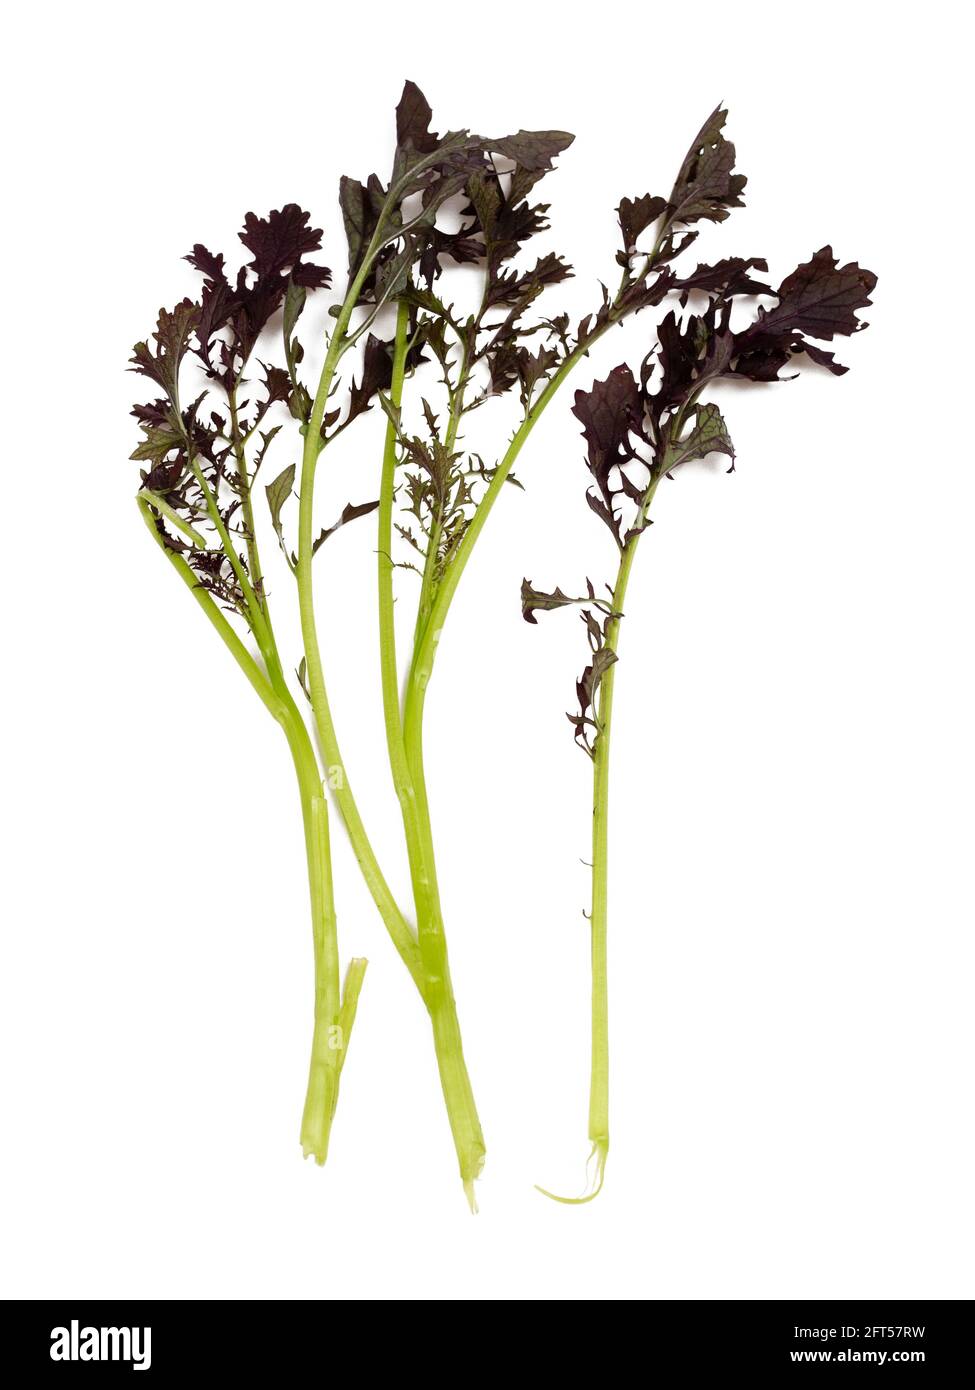 Frisch gepflückte Blätter des biologisch angebauten Salatsenfs Brassica juncea 'Red Lace' auf weißem Hintergrund Stockfoto